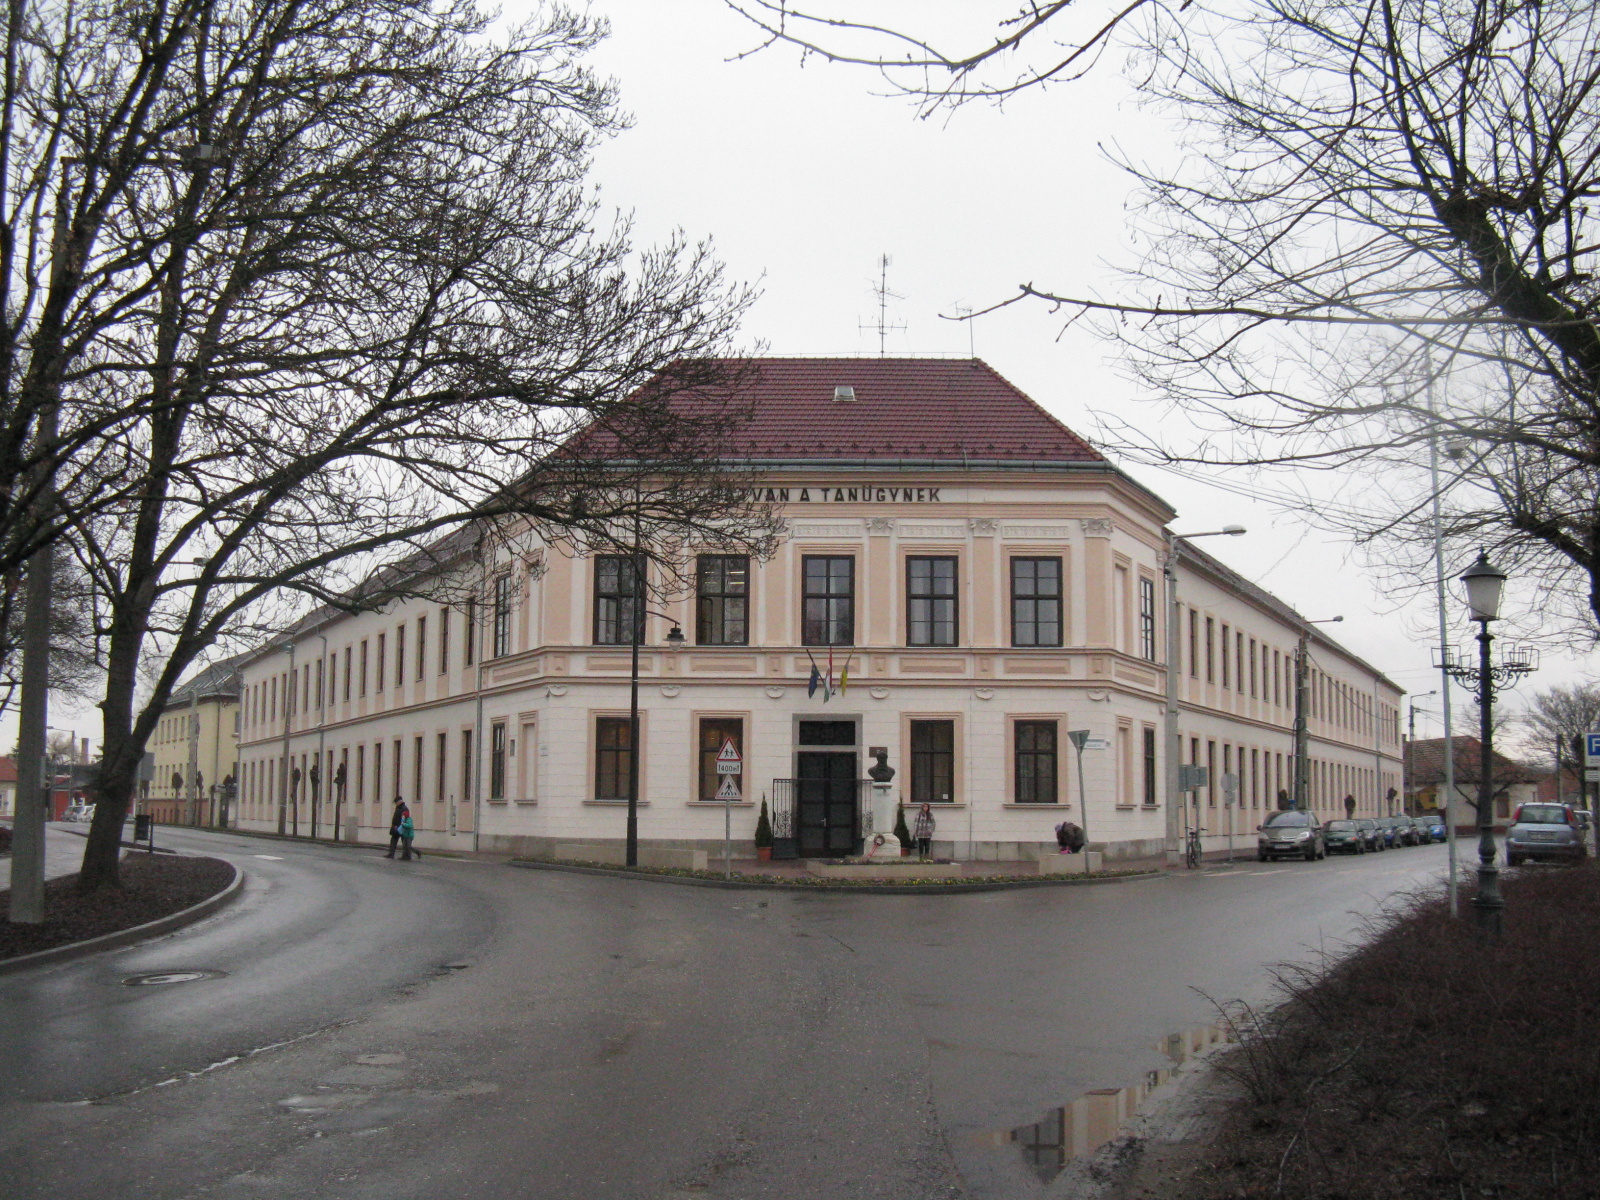 Kossuth Lajos Általános Iskola